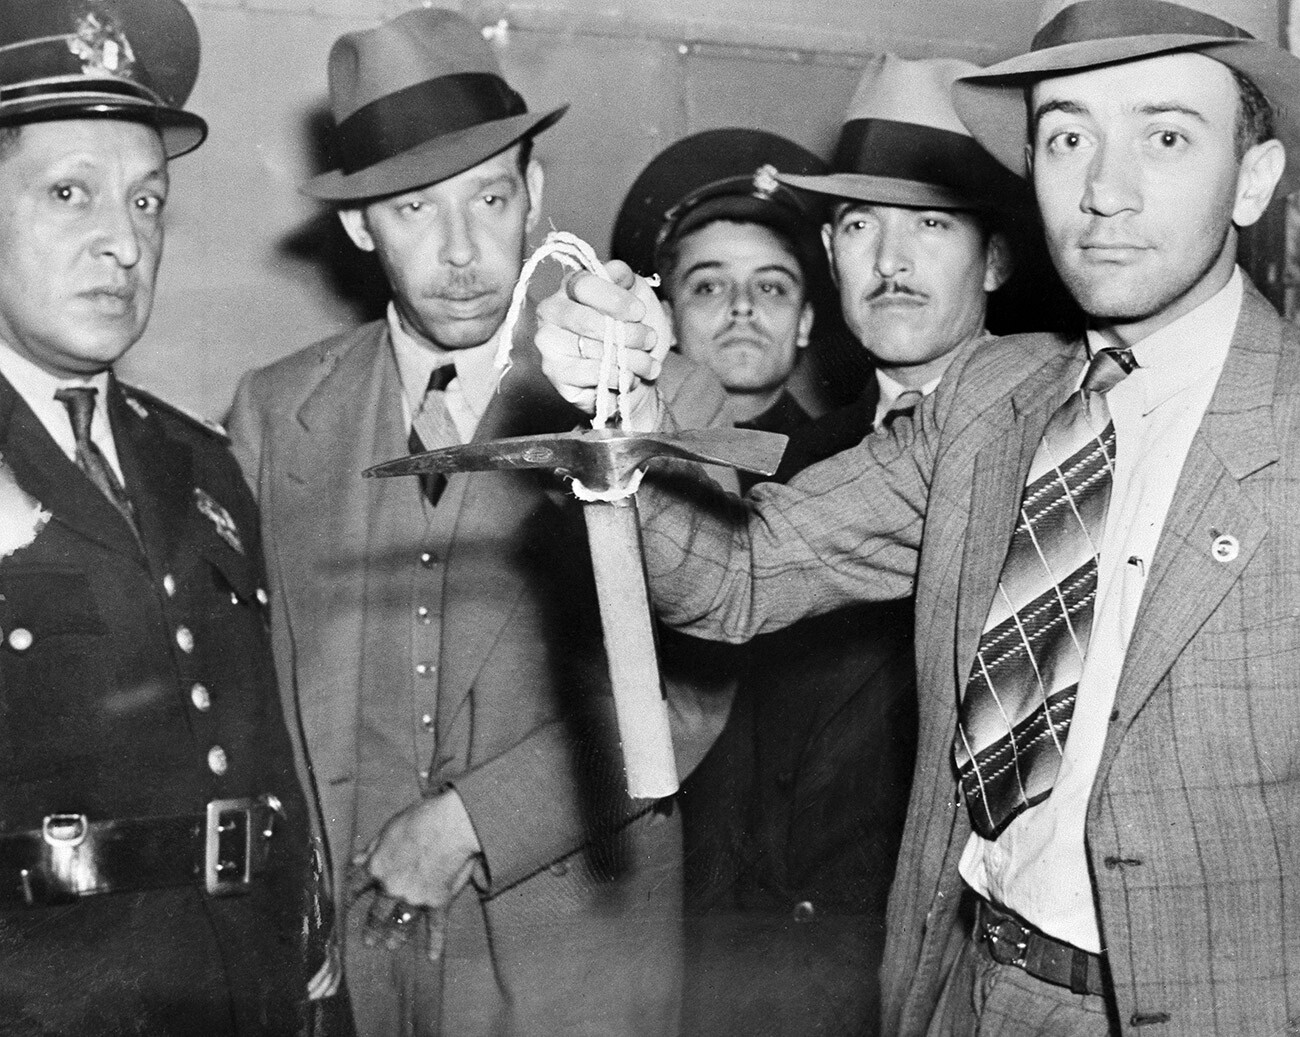 Mehiški policist drži v roki kramp, ki ga je uporabil Ramon Mercader, ko je napadel in smrtno ranil ruskega revolucionarja Leva Trockega na njegovem strogo varovanem domu v Mexico Cityju, 20. avgusta 1940. Preden je umrl zaradi ran, je Trocki dejal, da je njegovo smrt ukazal Josif Stalin.